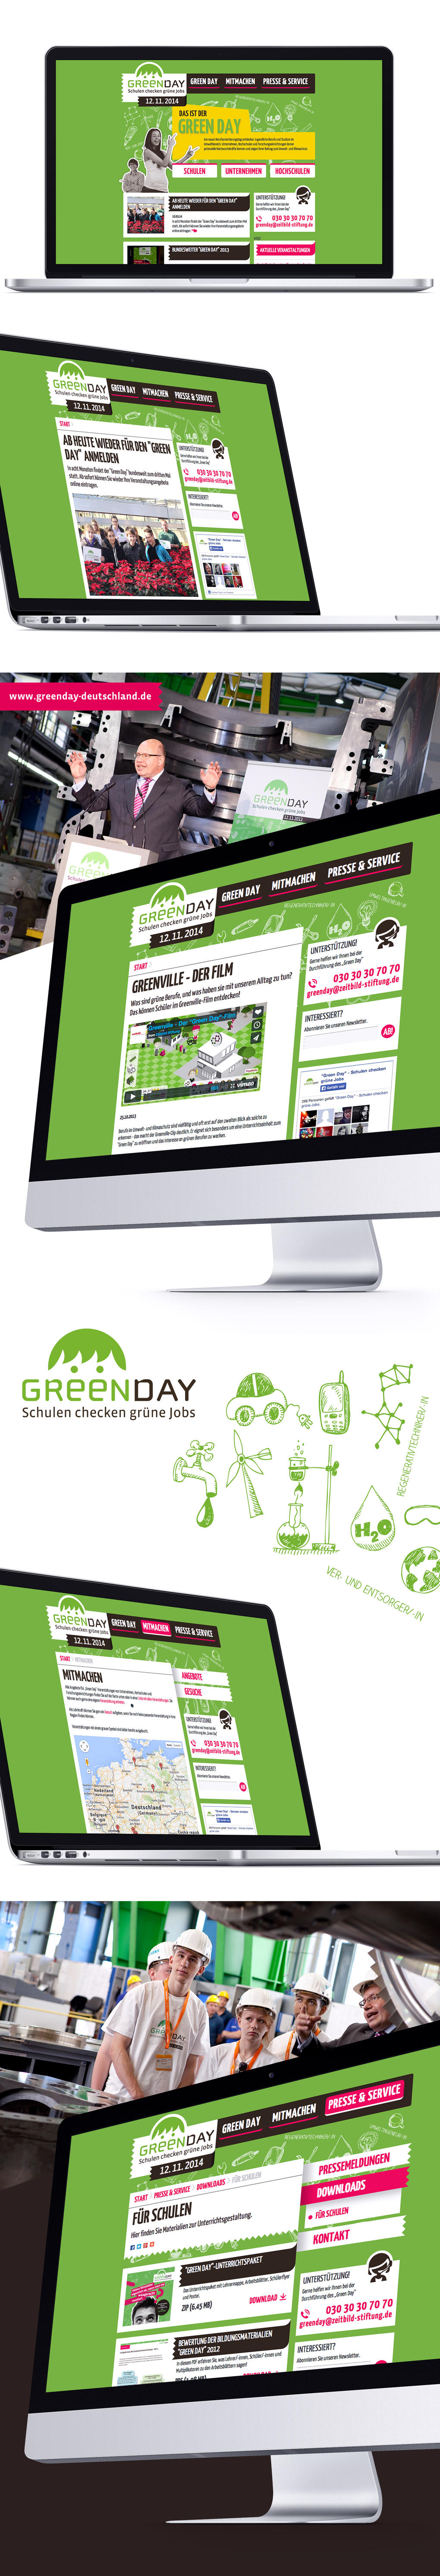 Greenday_Website